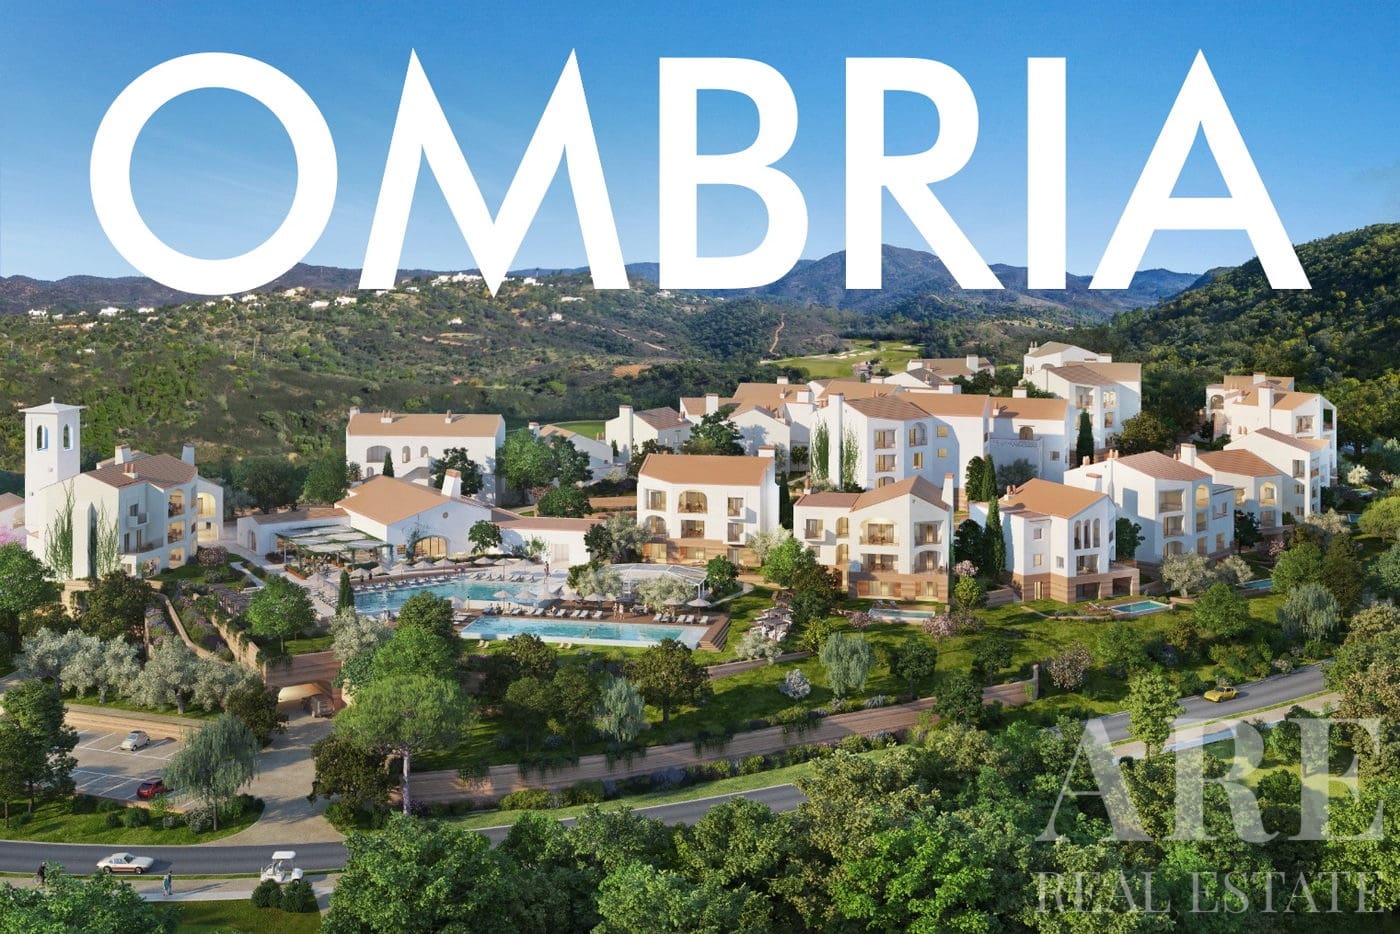 Ombria Resort condominium presentation